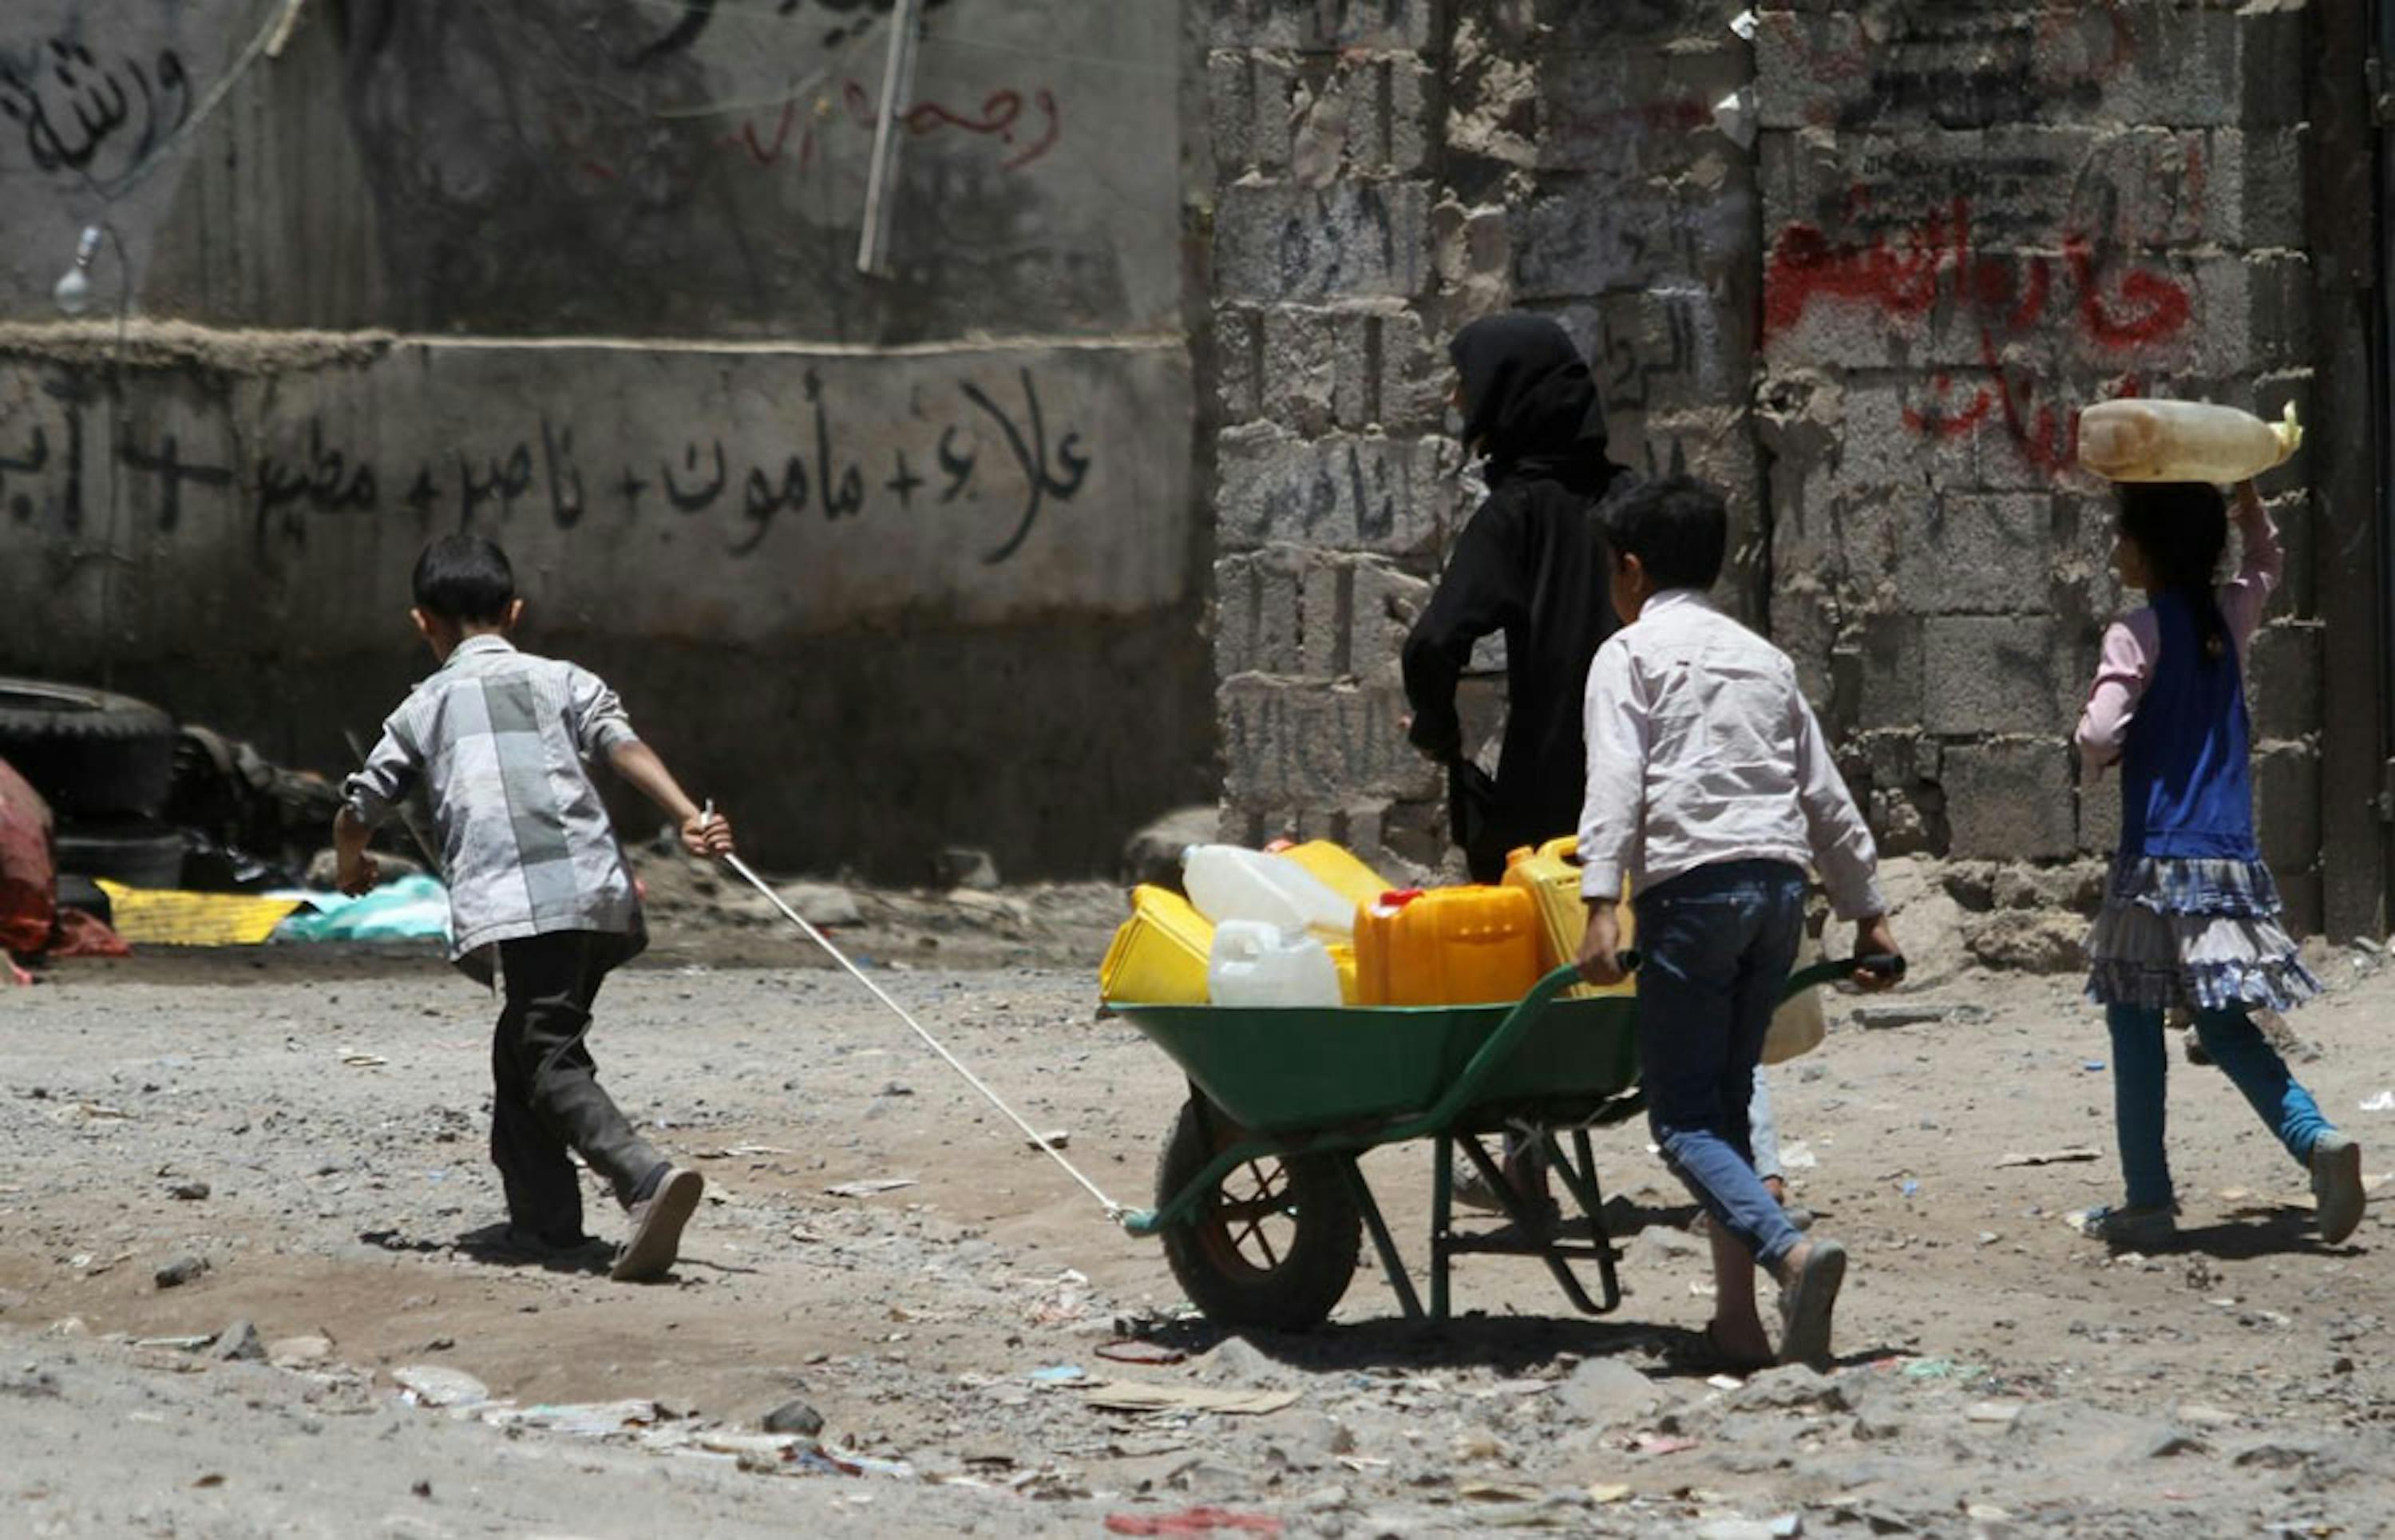 Bambini spingono una carriola piena di taniche in una strada di Sana'a, capitale dello Yemen. La ricerca dell'acqua è una delle preoccupazioni più pressanti per la popolazione civile in questi mesi di guerra - ©UNICEF/UNI184984/Mohammed Yasin